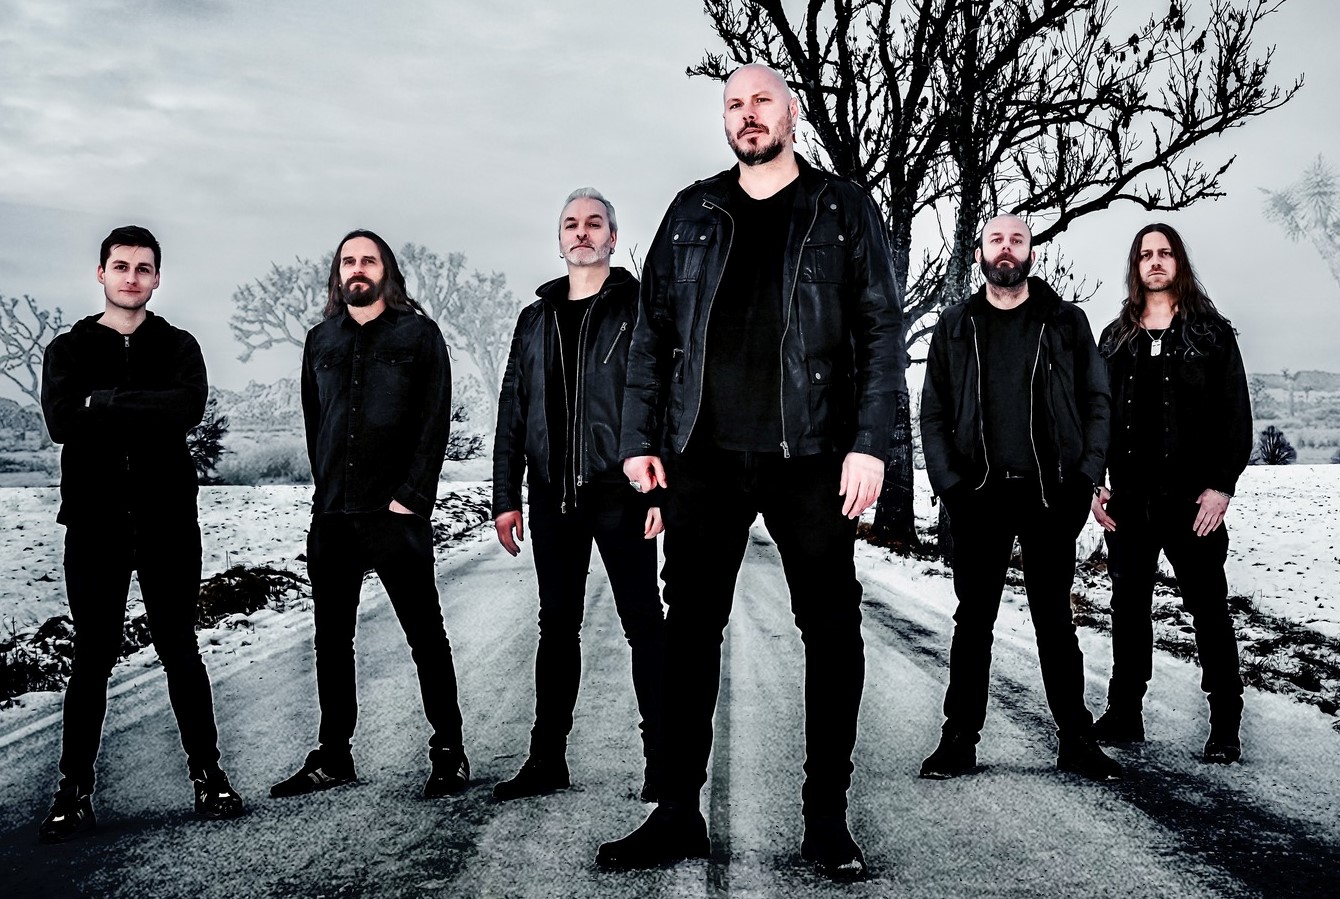 Οι SOILWORK ανακοινώνουν το νέο τους άλμπουμ «Övergivenheten» – Το επίσημο βίντεο για το ομώνυμο τραγούδι μόλις κυκλοφόρησε!